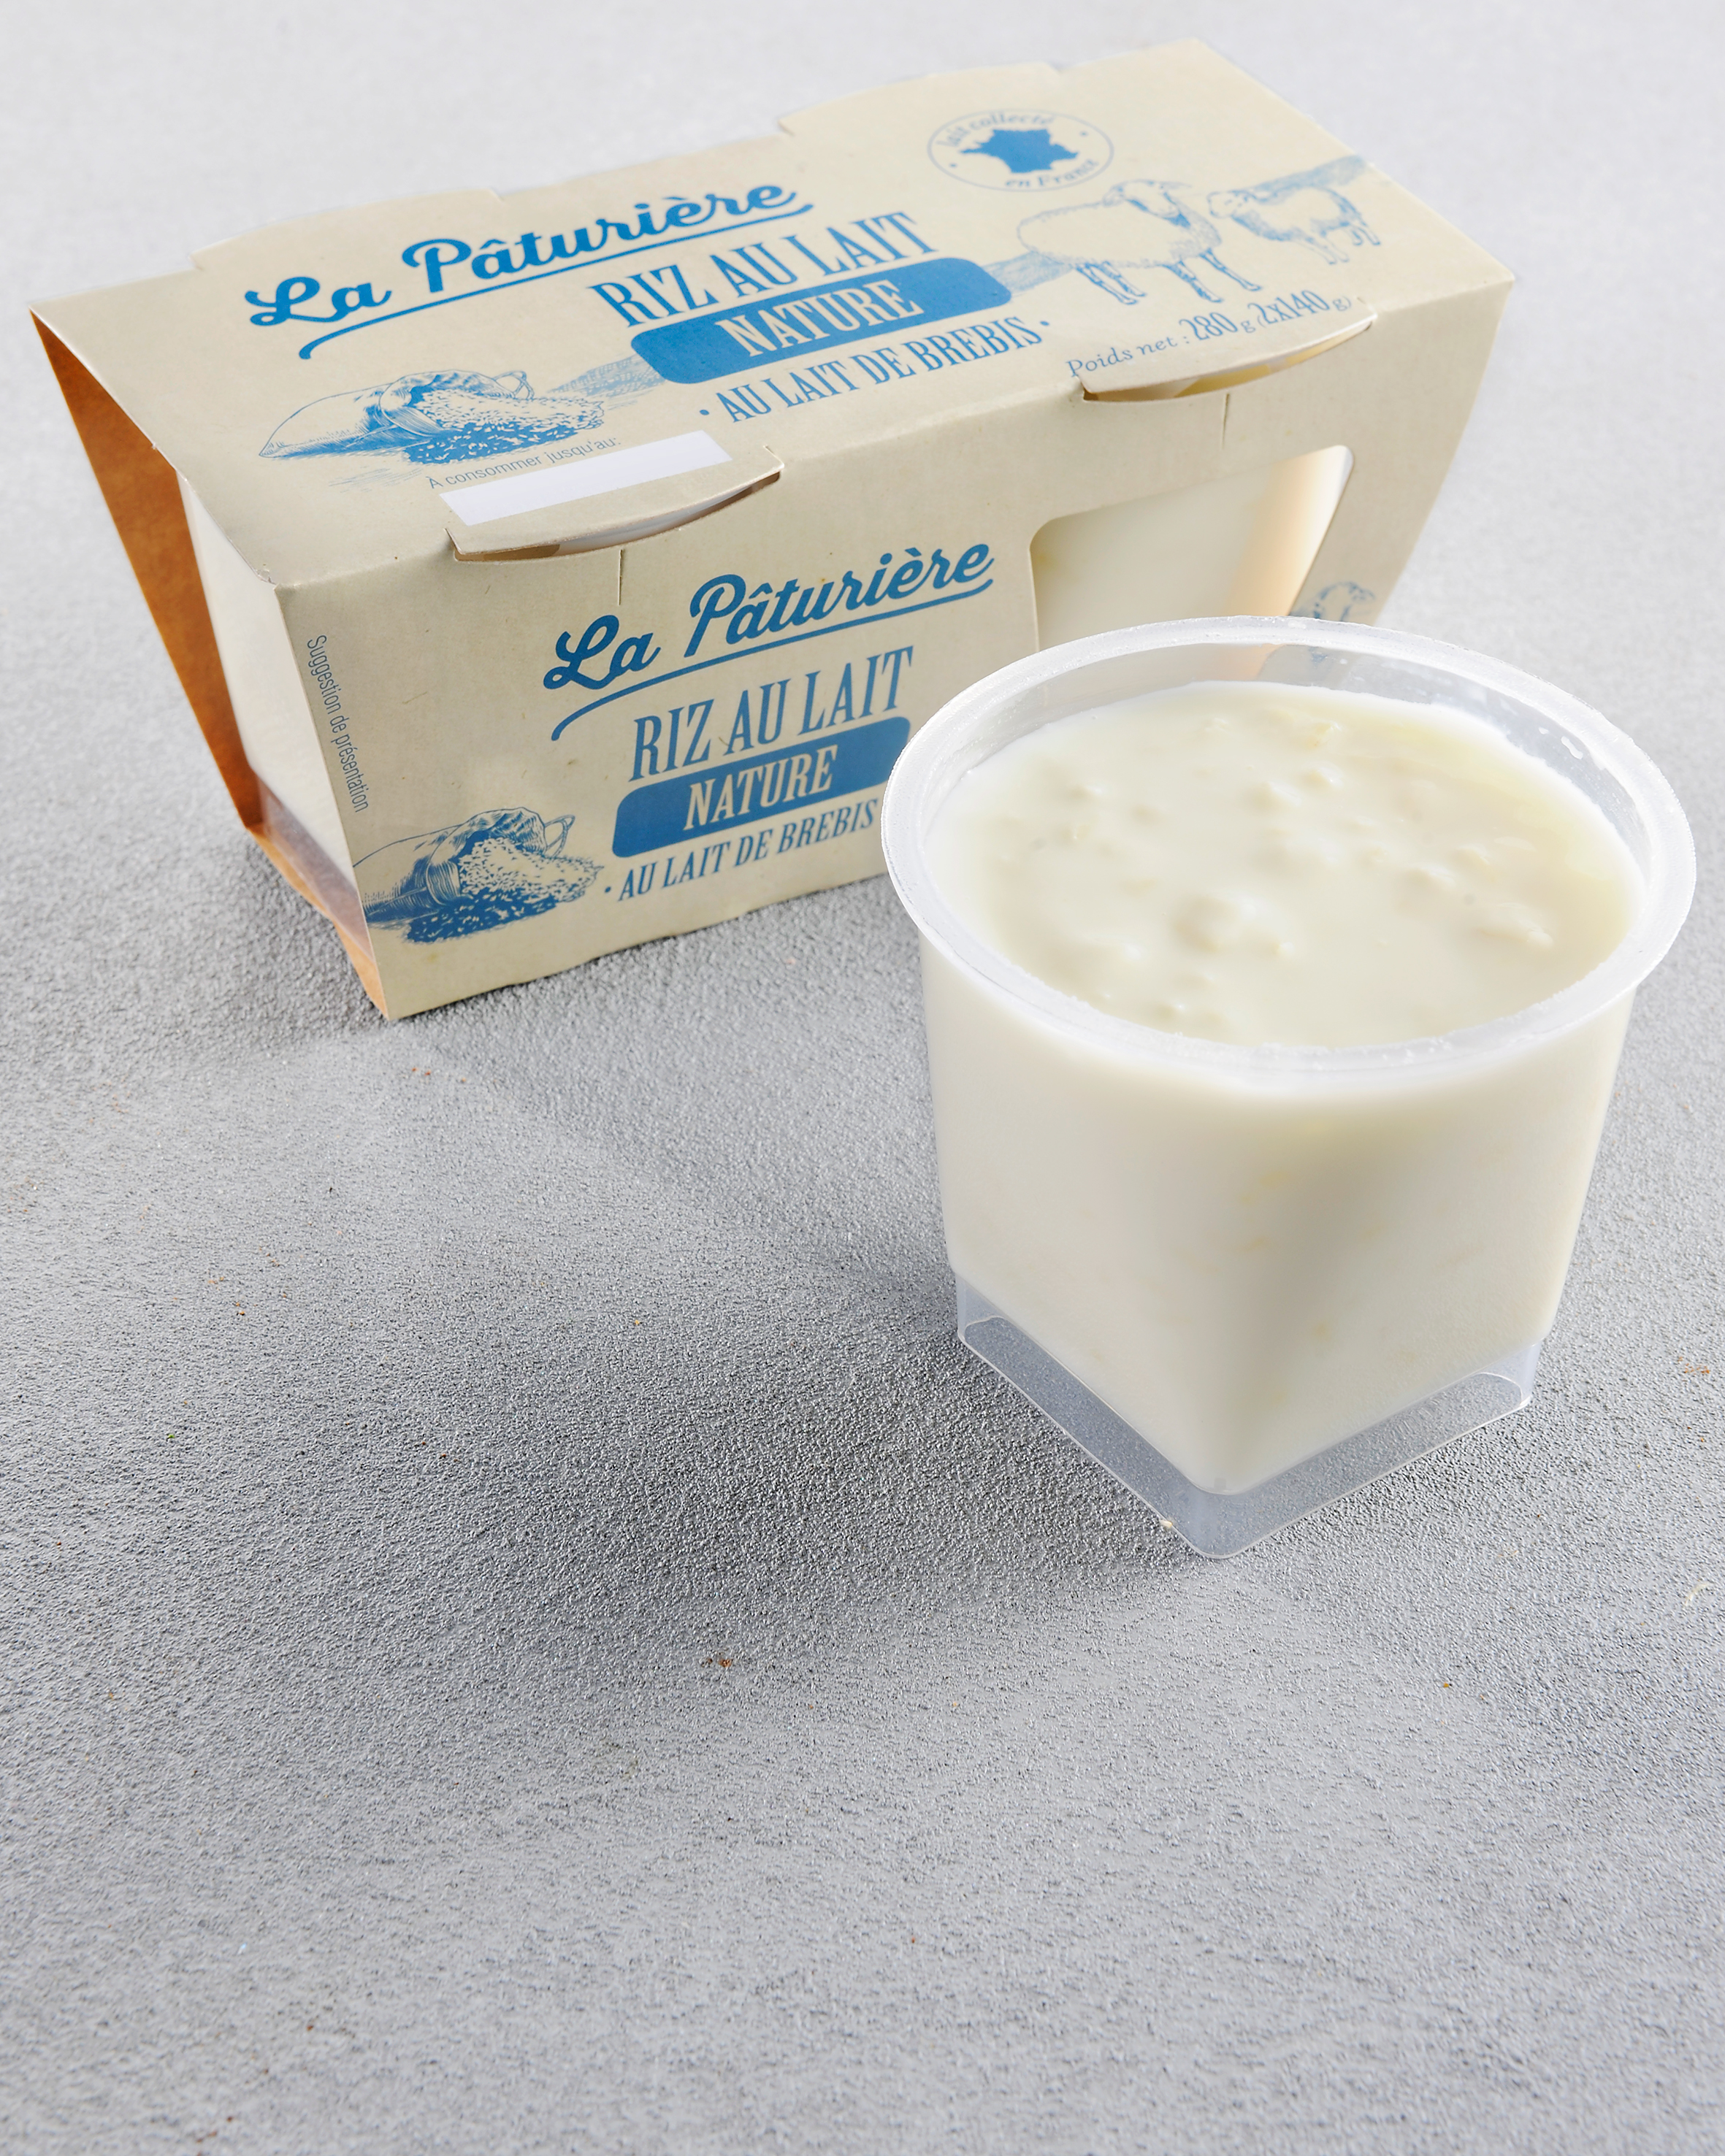 Riz au lait nature - Pâturages - 460 g (4 * 115 g)